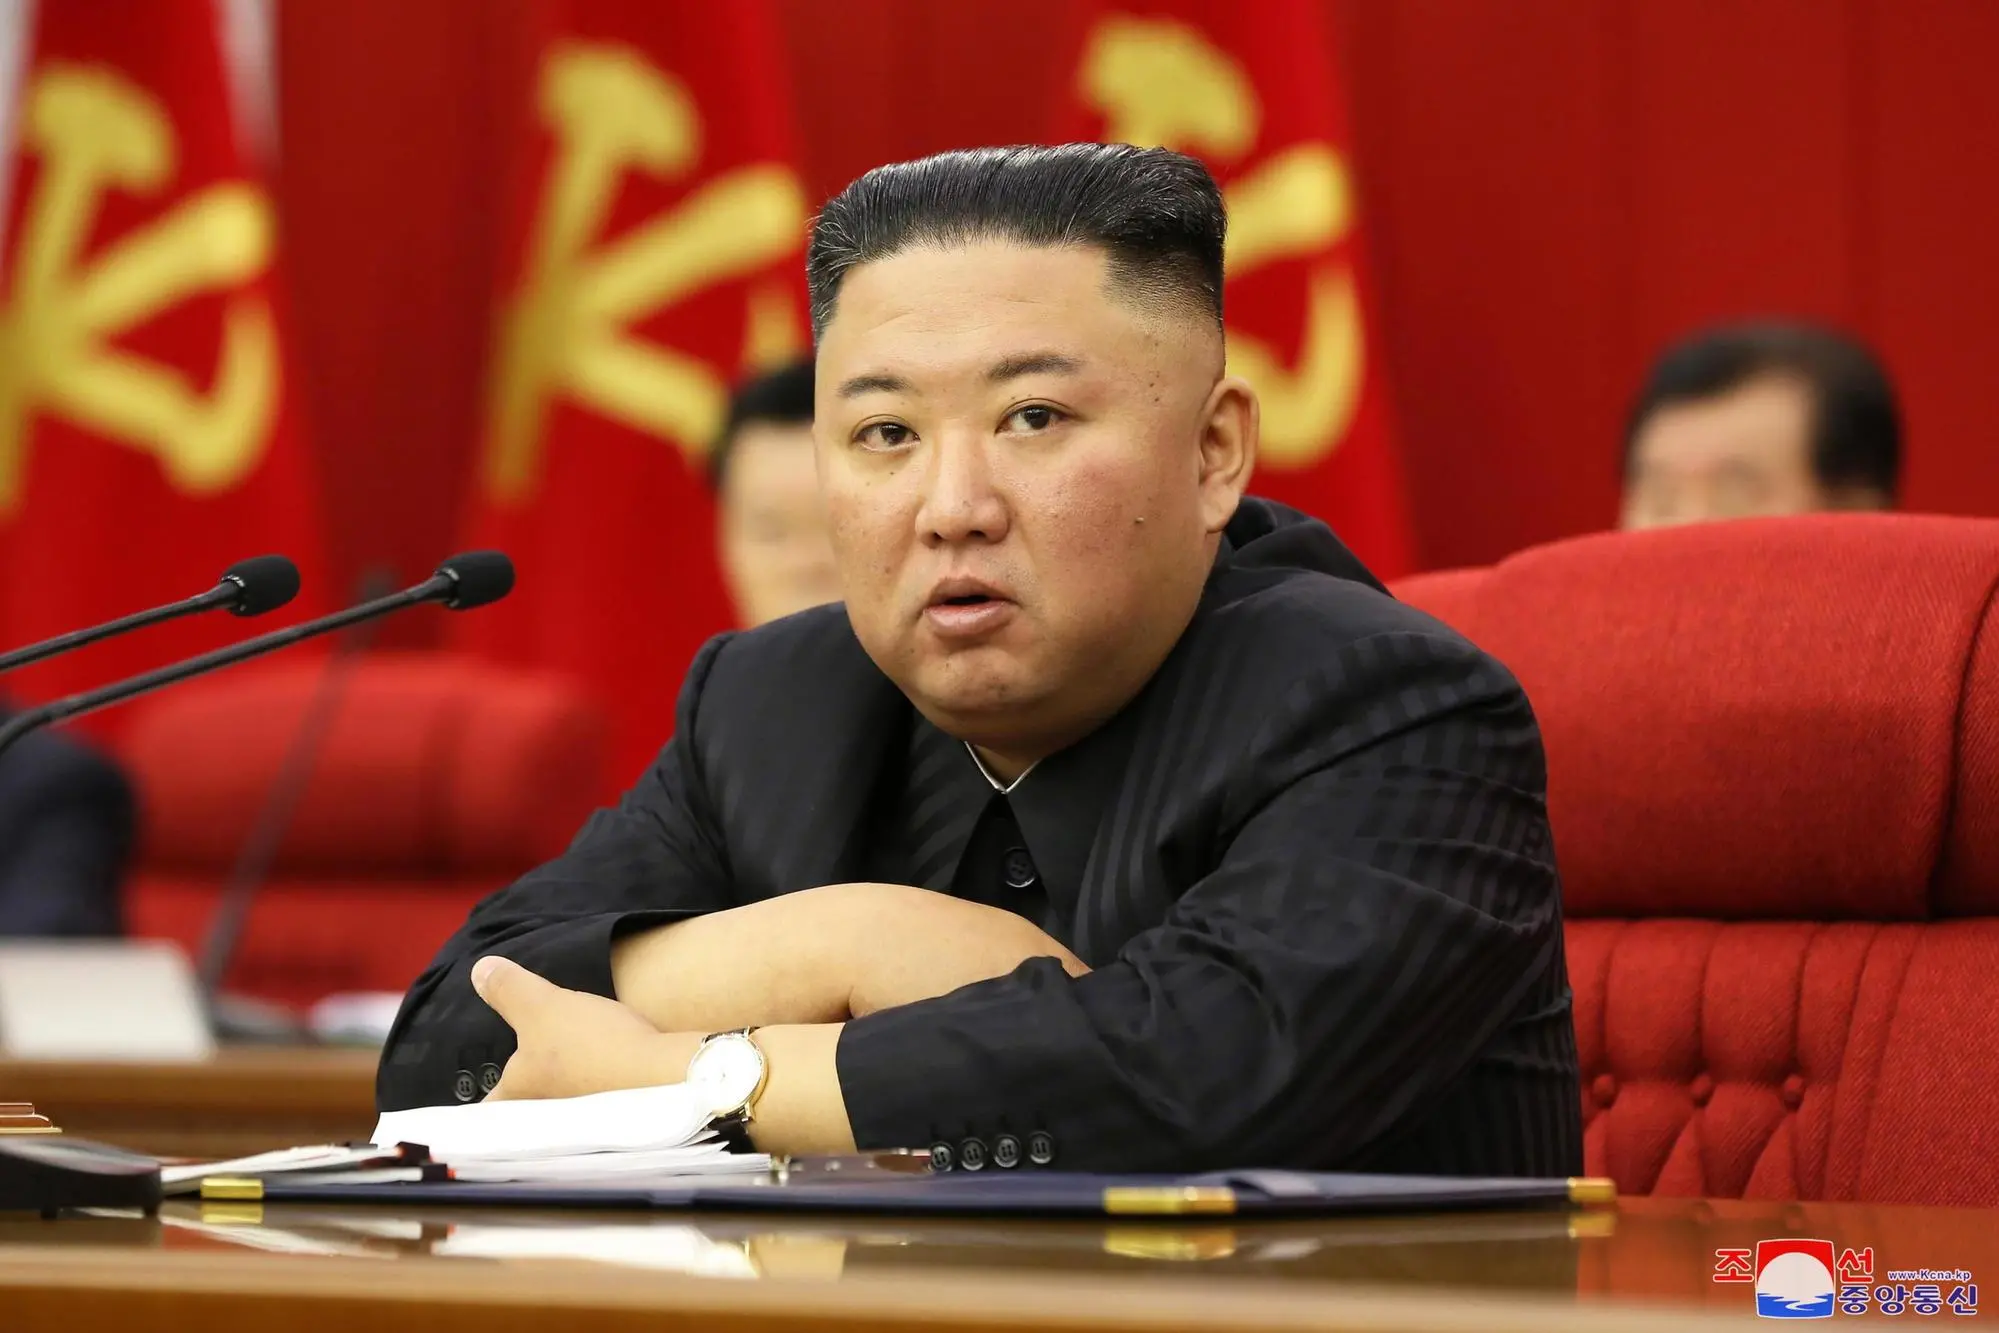 Il dittatore Kim Jong-un, dal 2011 capo supremo della\u00A0Corea del Nord (Archivio)